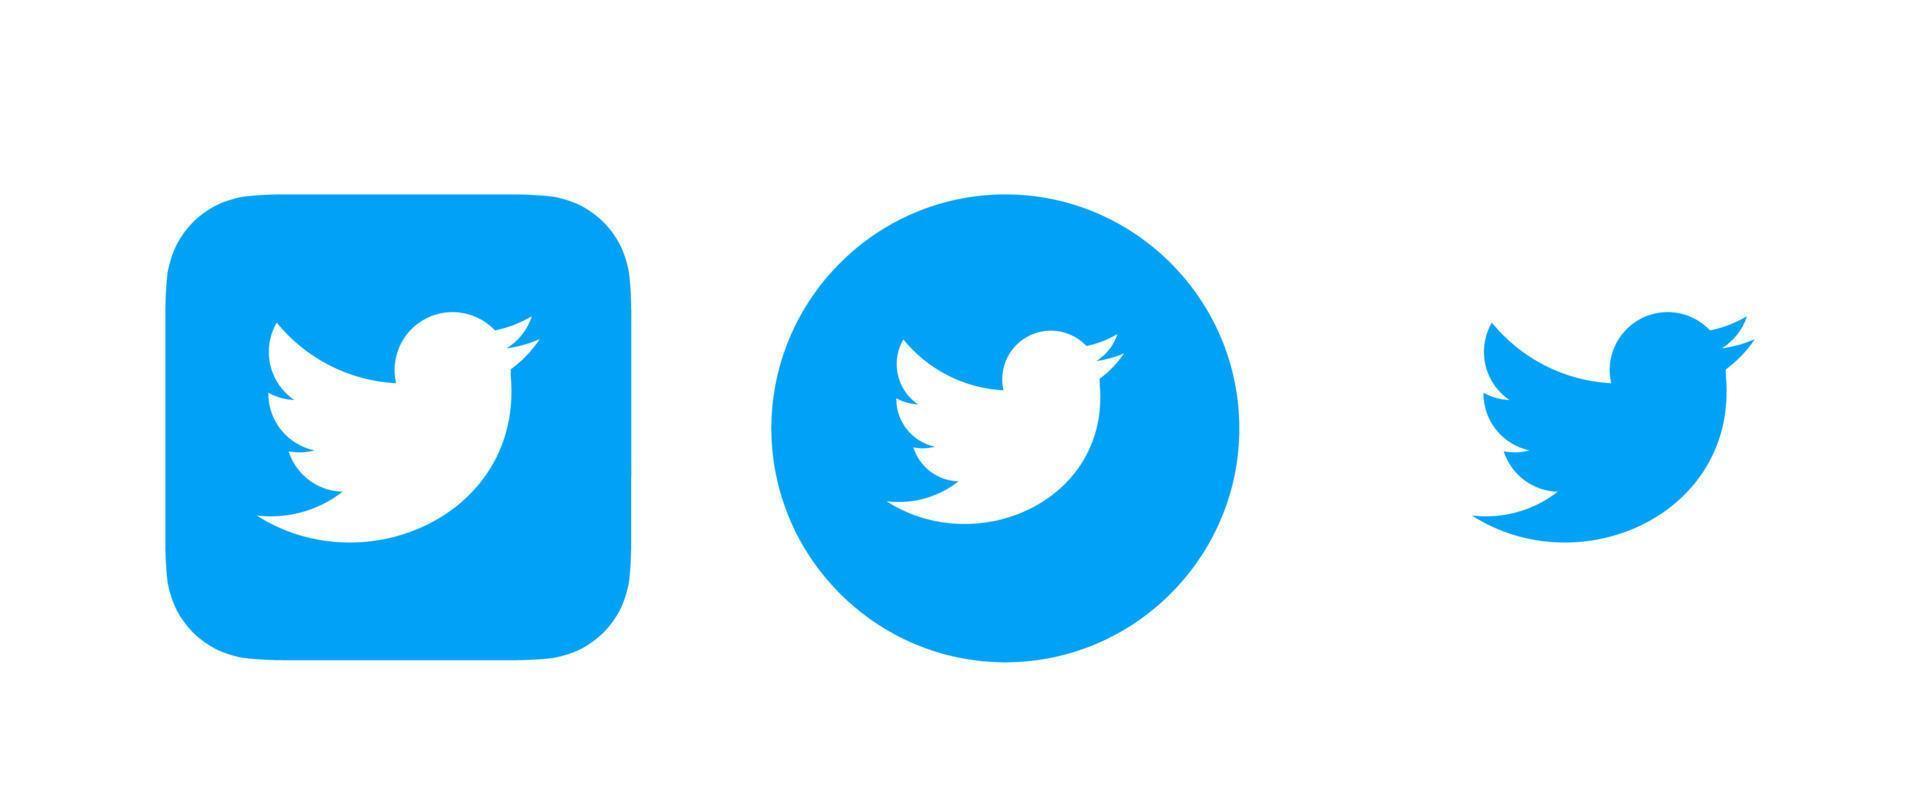 Twitter-Logo, Twitter-Icon-Vektor, Twitter-Symbol-freier Vektor